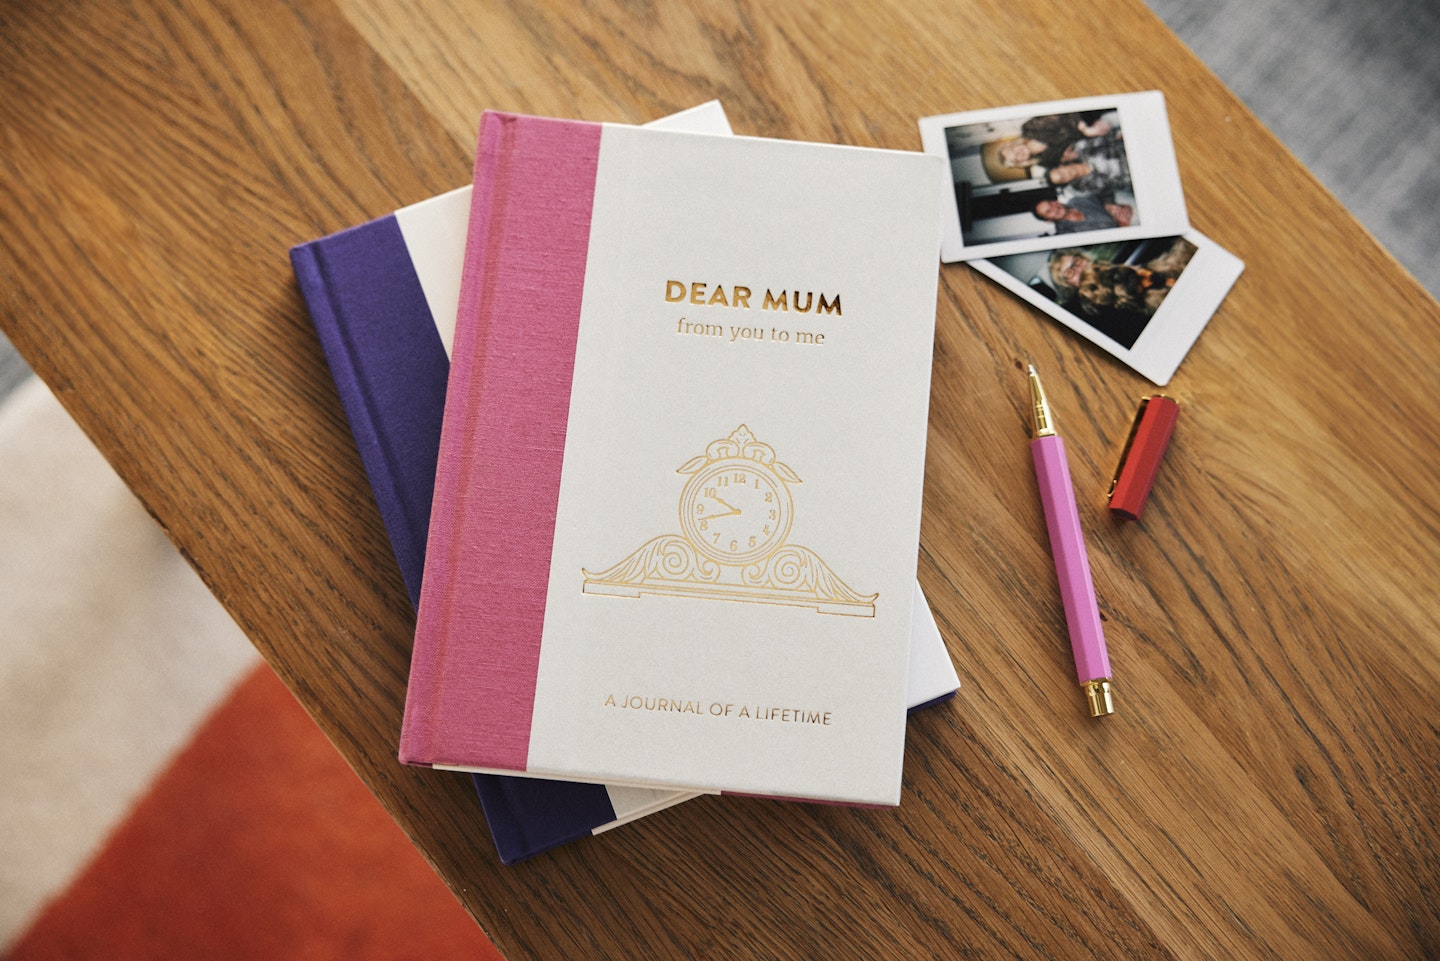 Dear Mum journal